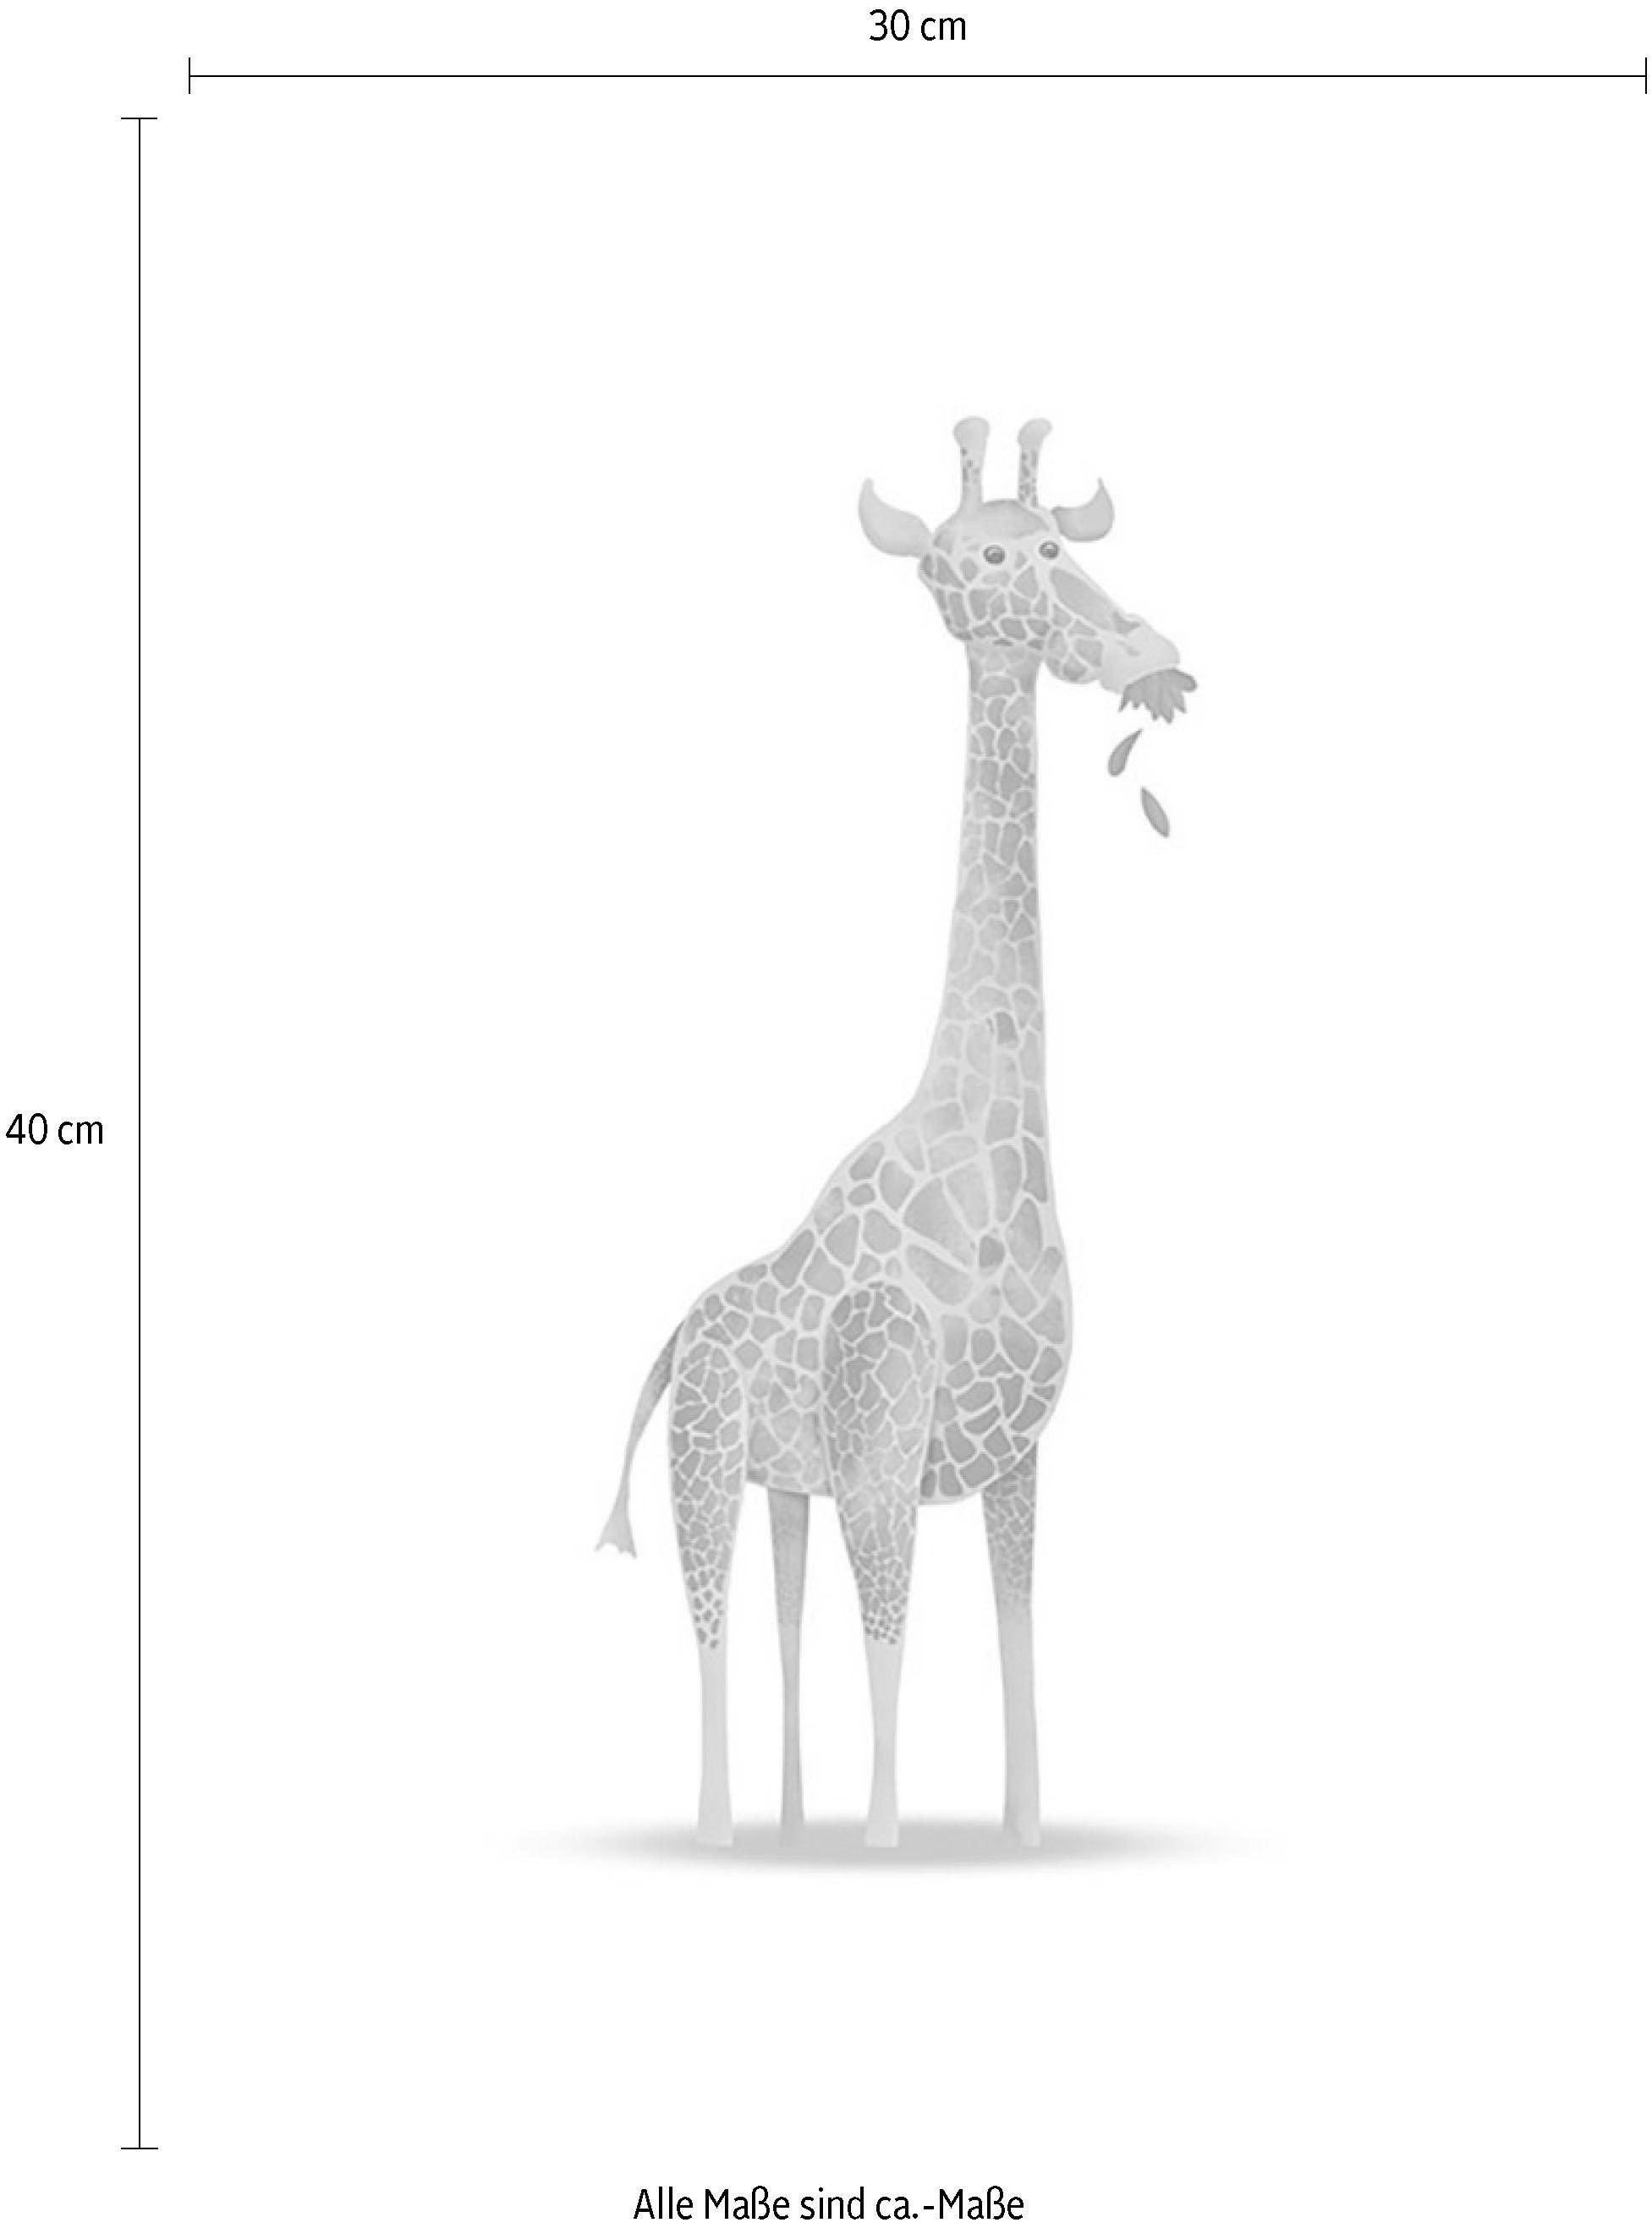 Komar Poster »Cute Animal Giraffe«, Tiere, (1 St.), Kinderzimmer, Schlafzimmer, Wohnzimmer